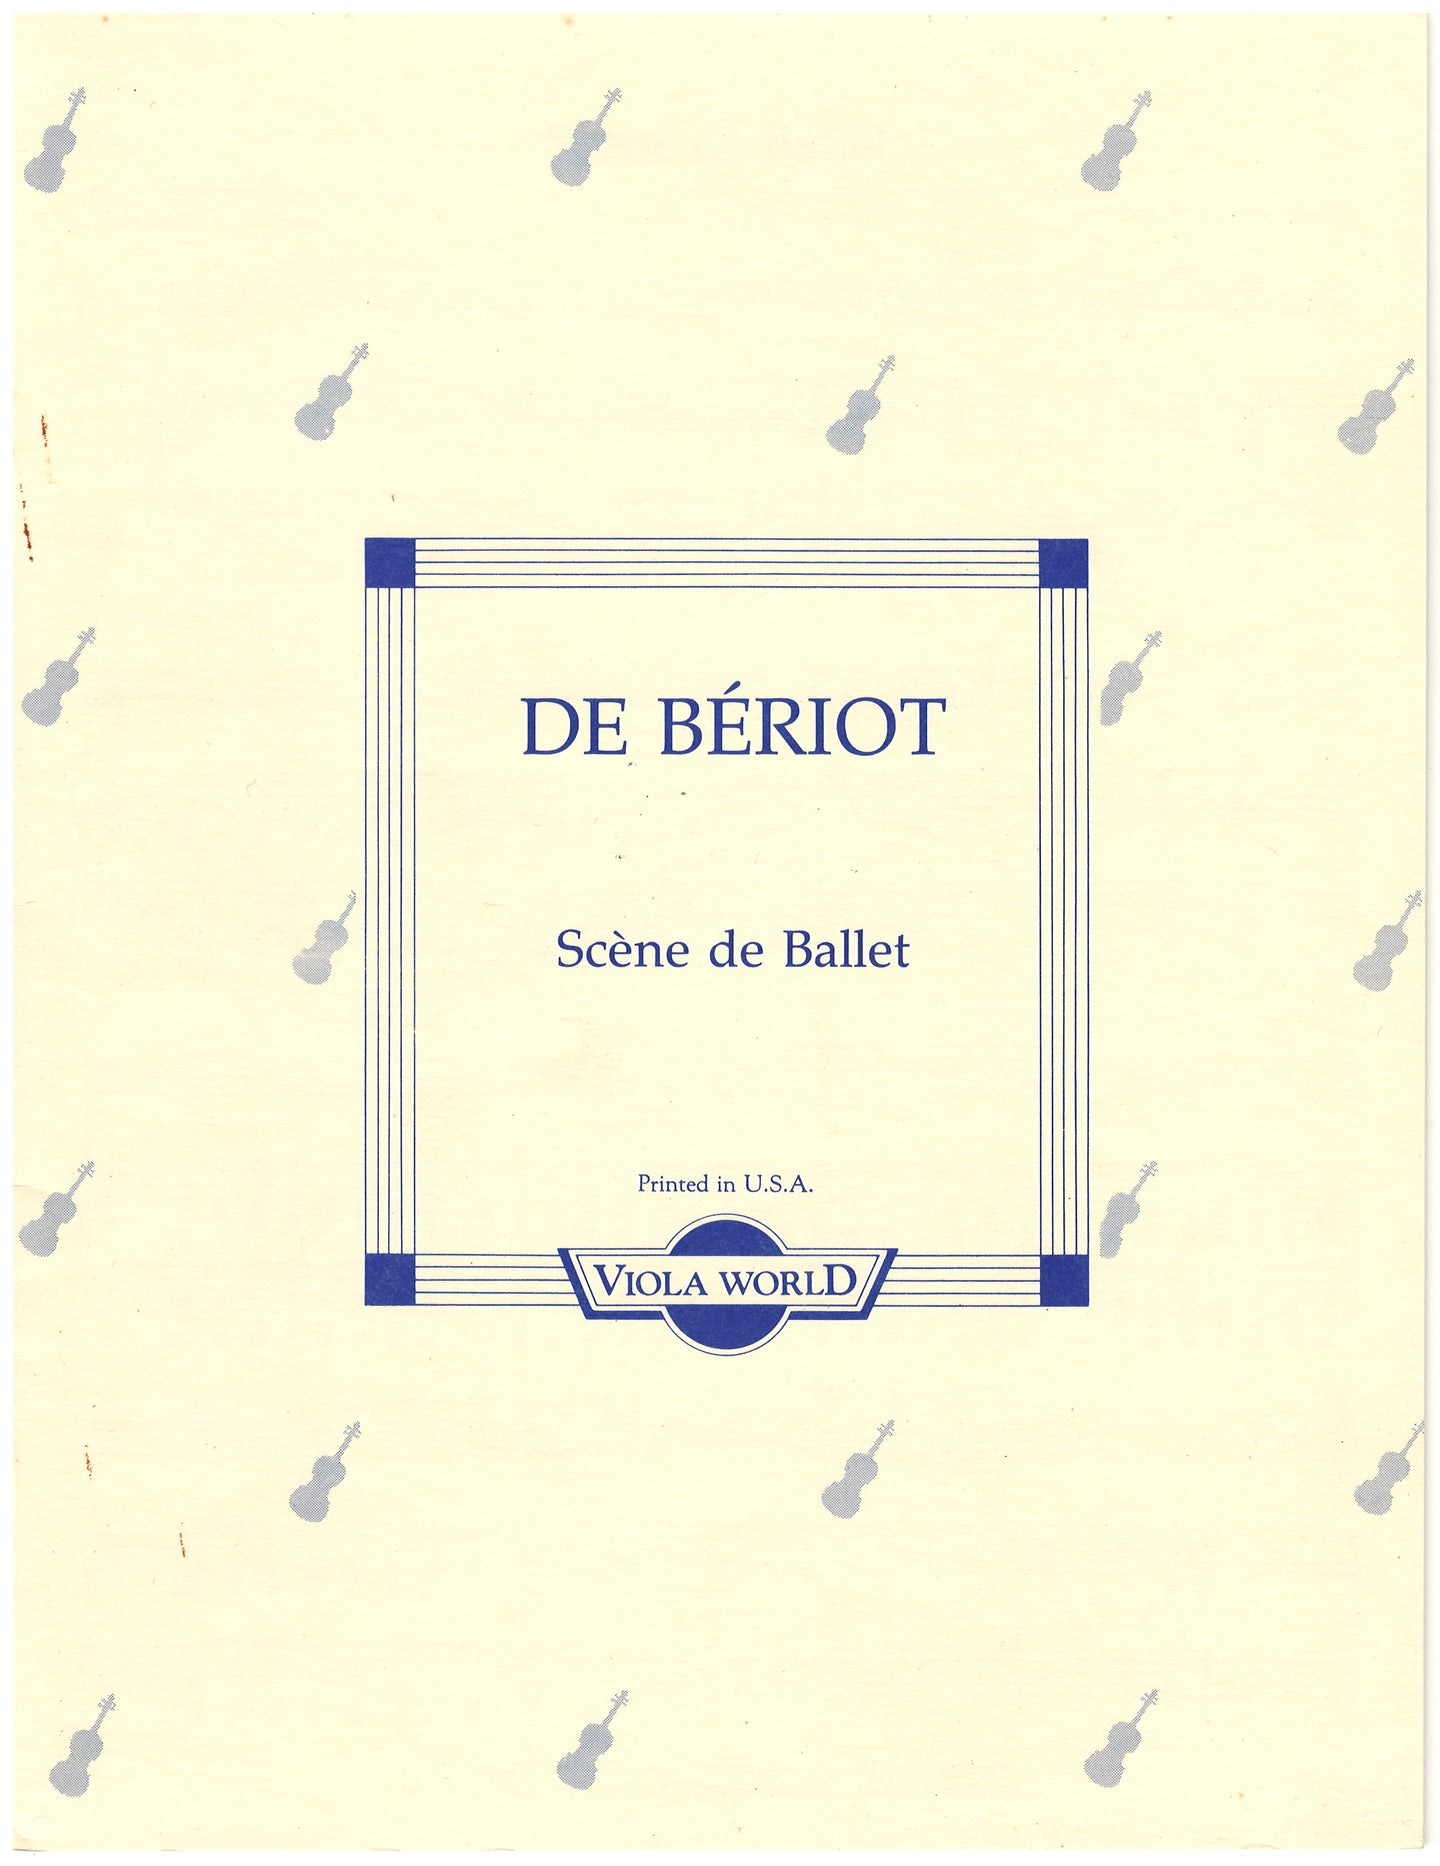 DeBeriot - Scene de Ballet